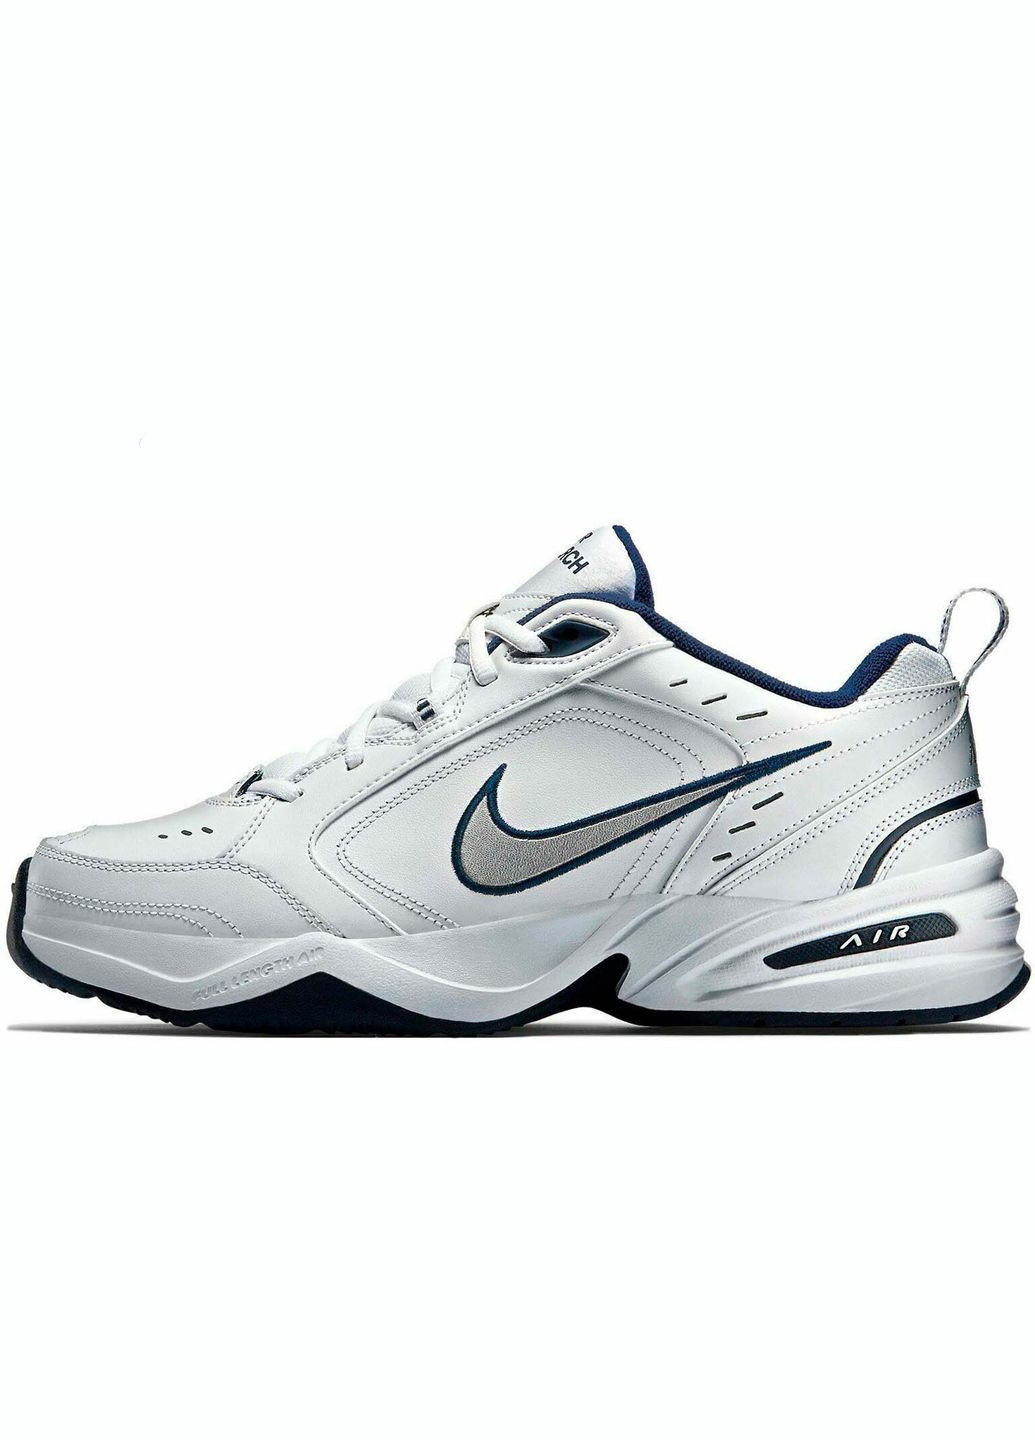 Білі всесезон кросівки чоловічі air monarch iv 4e 416355-102 весна-осінь шкіра текстиль білі на широку ногу Nike